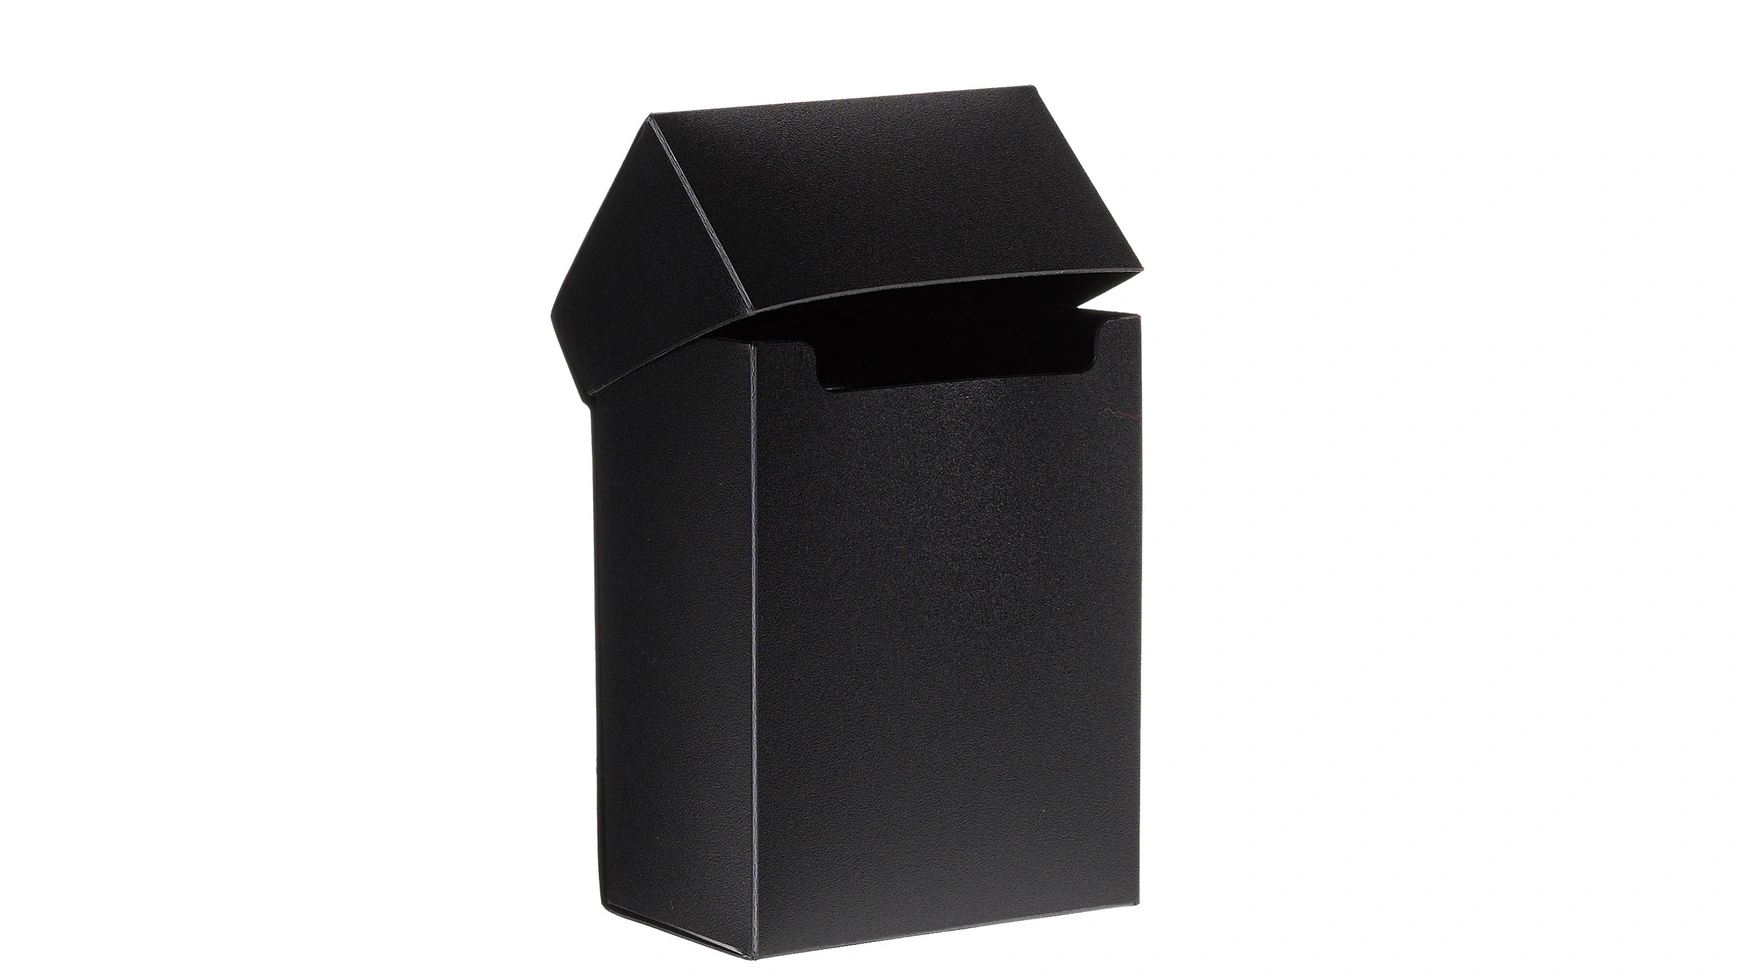 Müller Toy Place Картонная коробка черный Mueller кубок малый пластик лучший руководитель 13 х 7 5 х 7 5 см